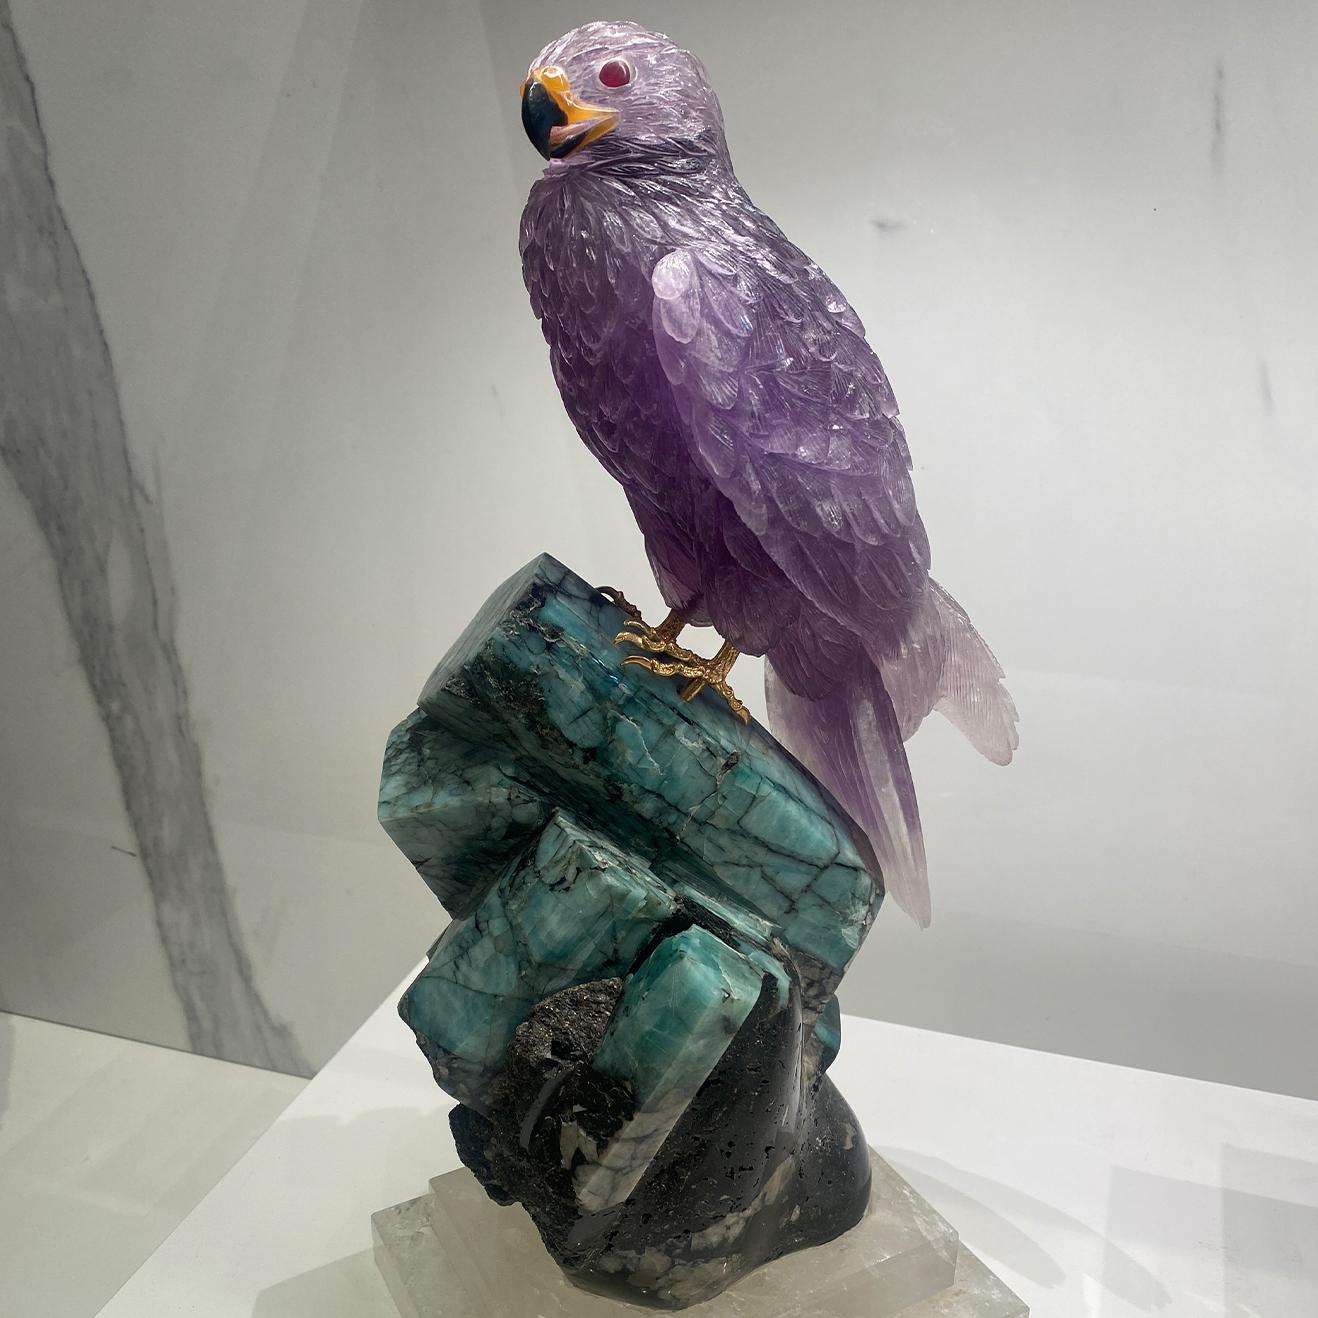 Cette sculpture rare et unique en son genre représente un faucon en améthyste sculpté à la main, perché sur une base en cristal émeraude, stabilisée par une plate-forme sculptée dans un fin cristal de quartz naturel.

- Un faucon sculpté à la main